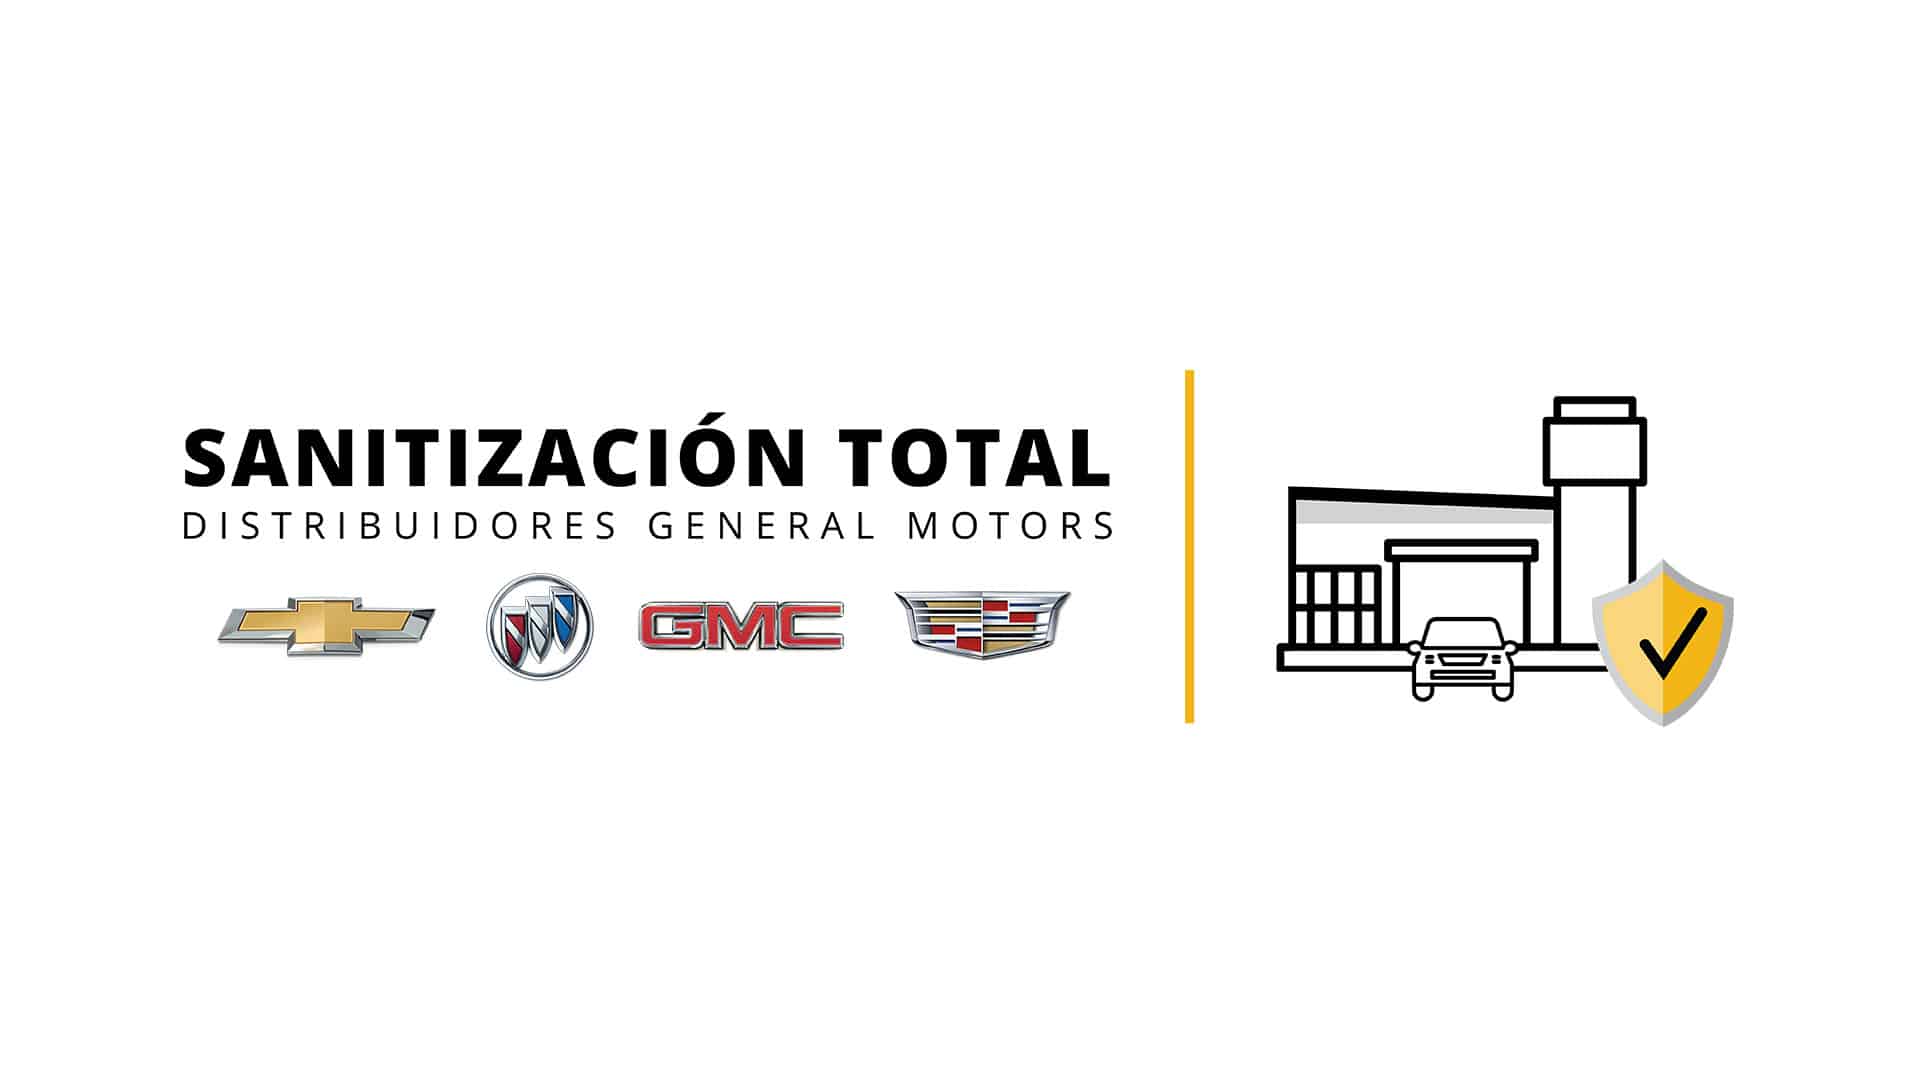 General Motors pone en marcha el programa “Sanitización Total” en distribuidores